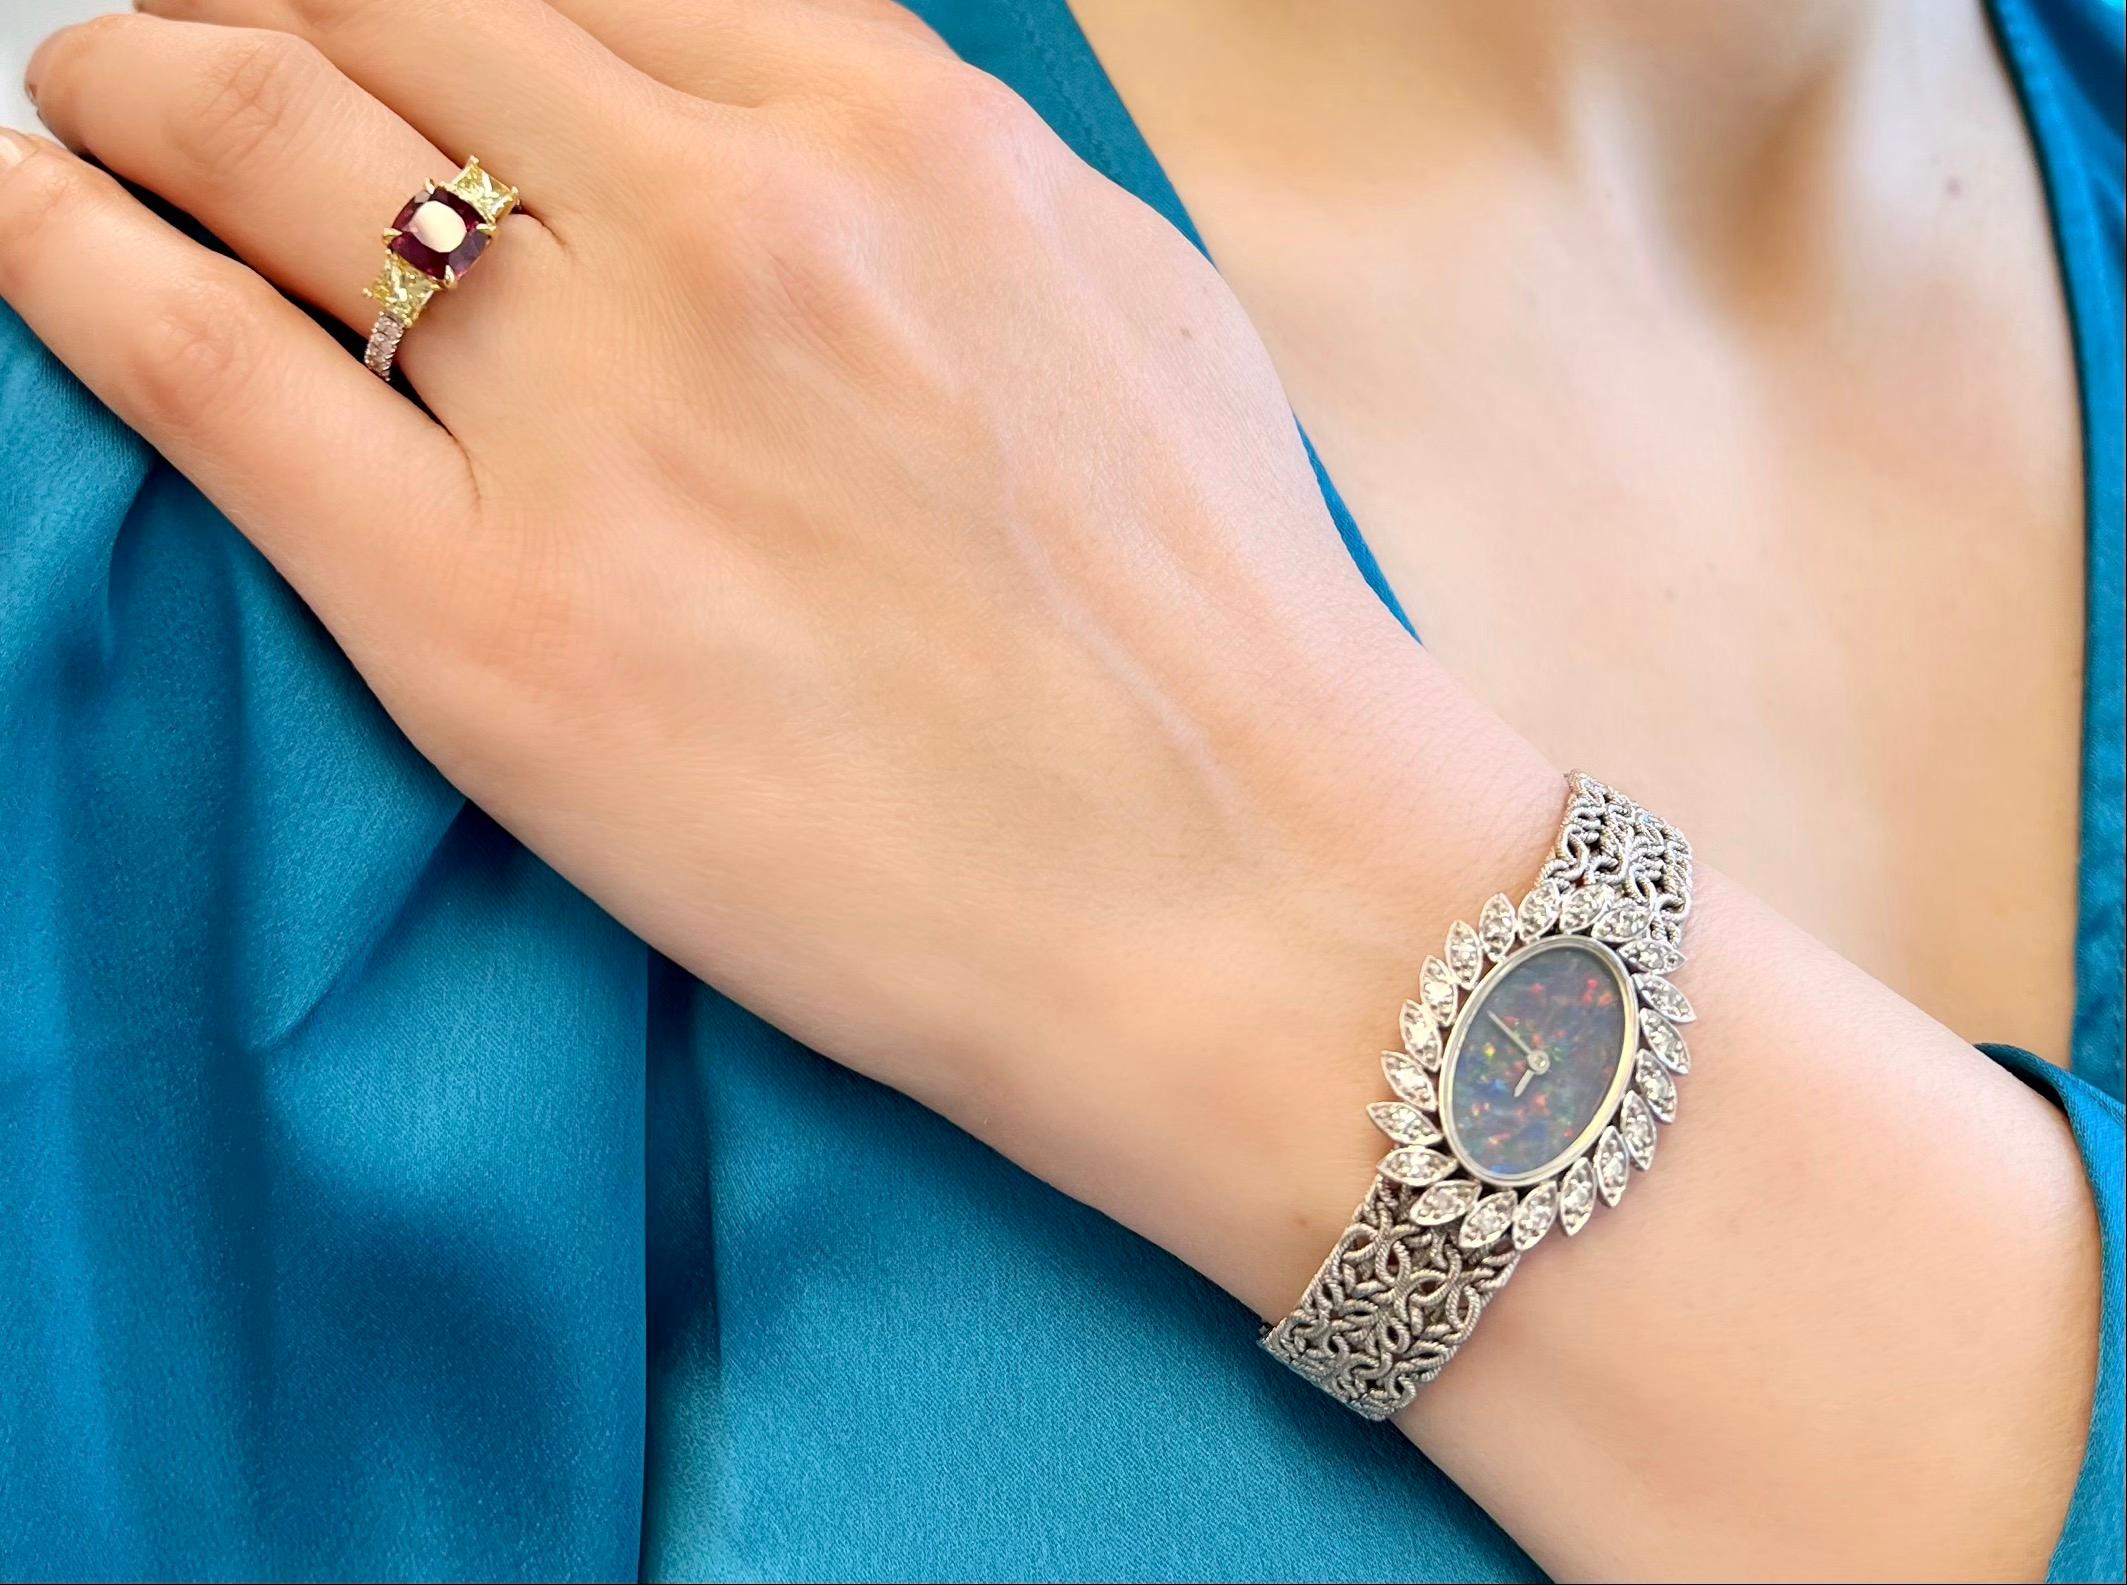 Cette montre-bracelet vintage unique de Chopard pour femme présente un élégant cadran opale sur un bracelet en or texturé, entièrement réalisé en or blanc 18 carats.

Ce garde-temps intemporel est orné d'un entourage de diamants, ce qui rehausse son